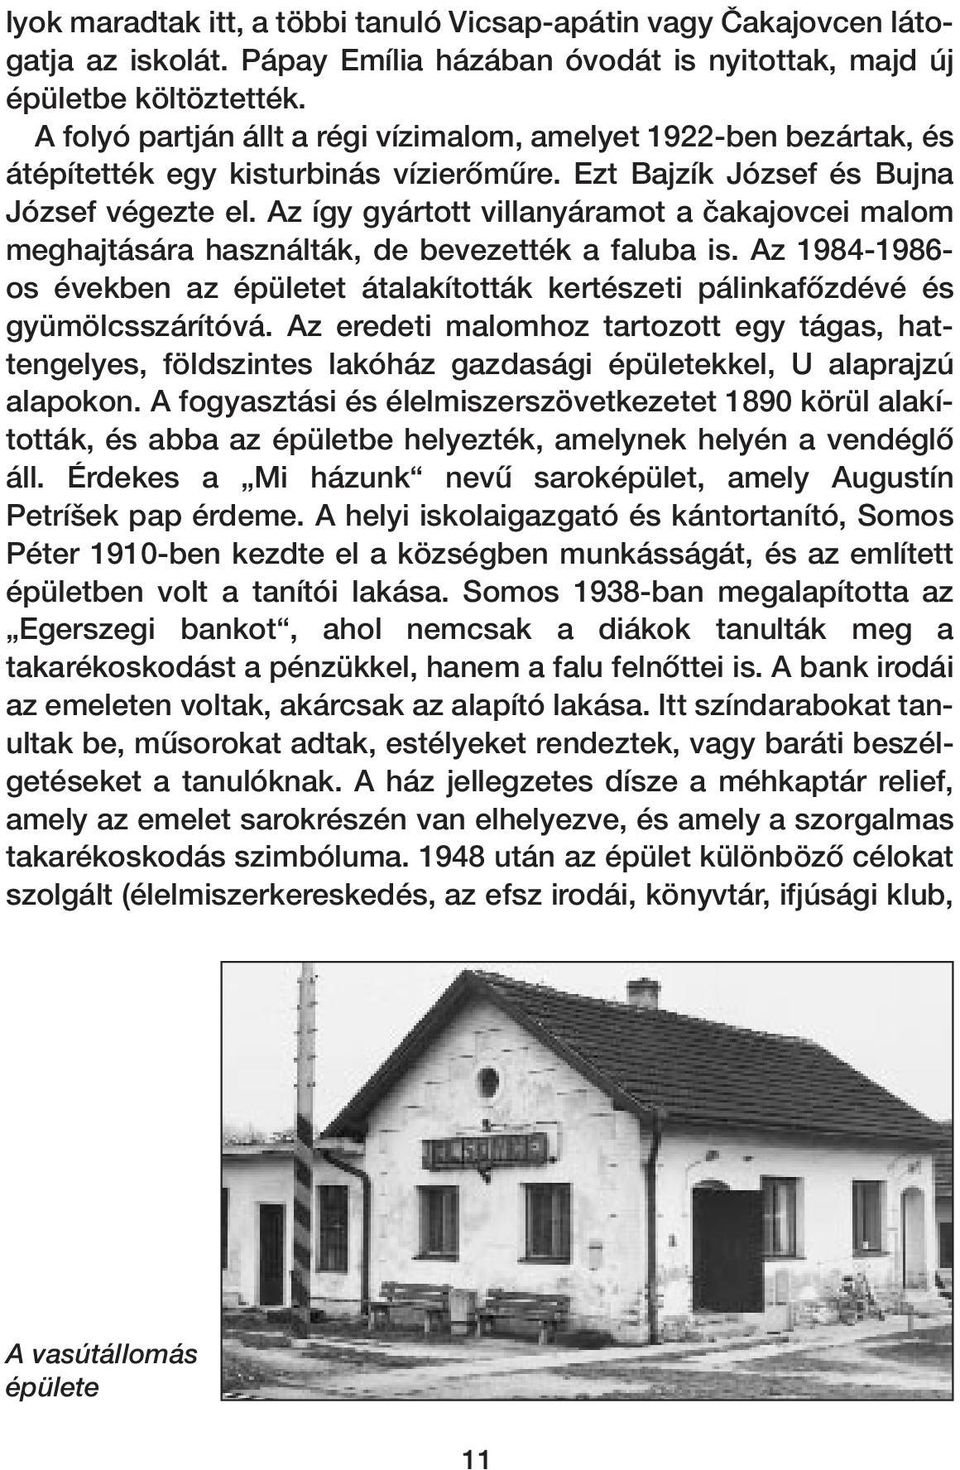 Az így gyártott villanyáramot a ãakajovcei malom meghajtására használták, de bevezették a faluba is. Az 1984-1986- os években az épületet átalakították kertészeti pálinkafœzdévé és gyümölcsszárítóvá.